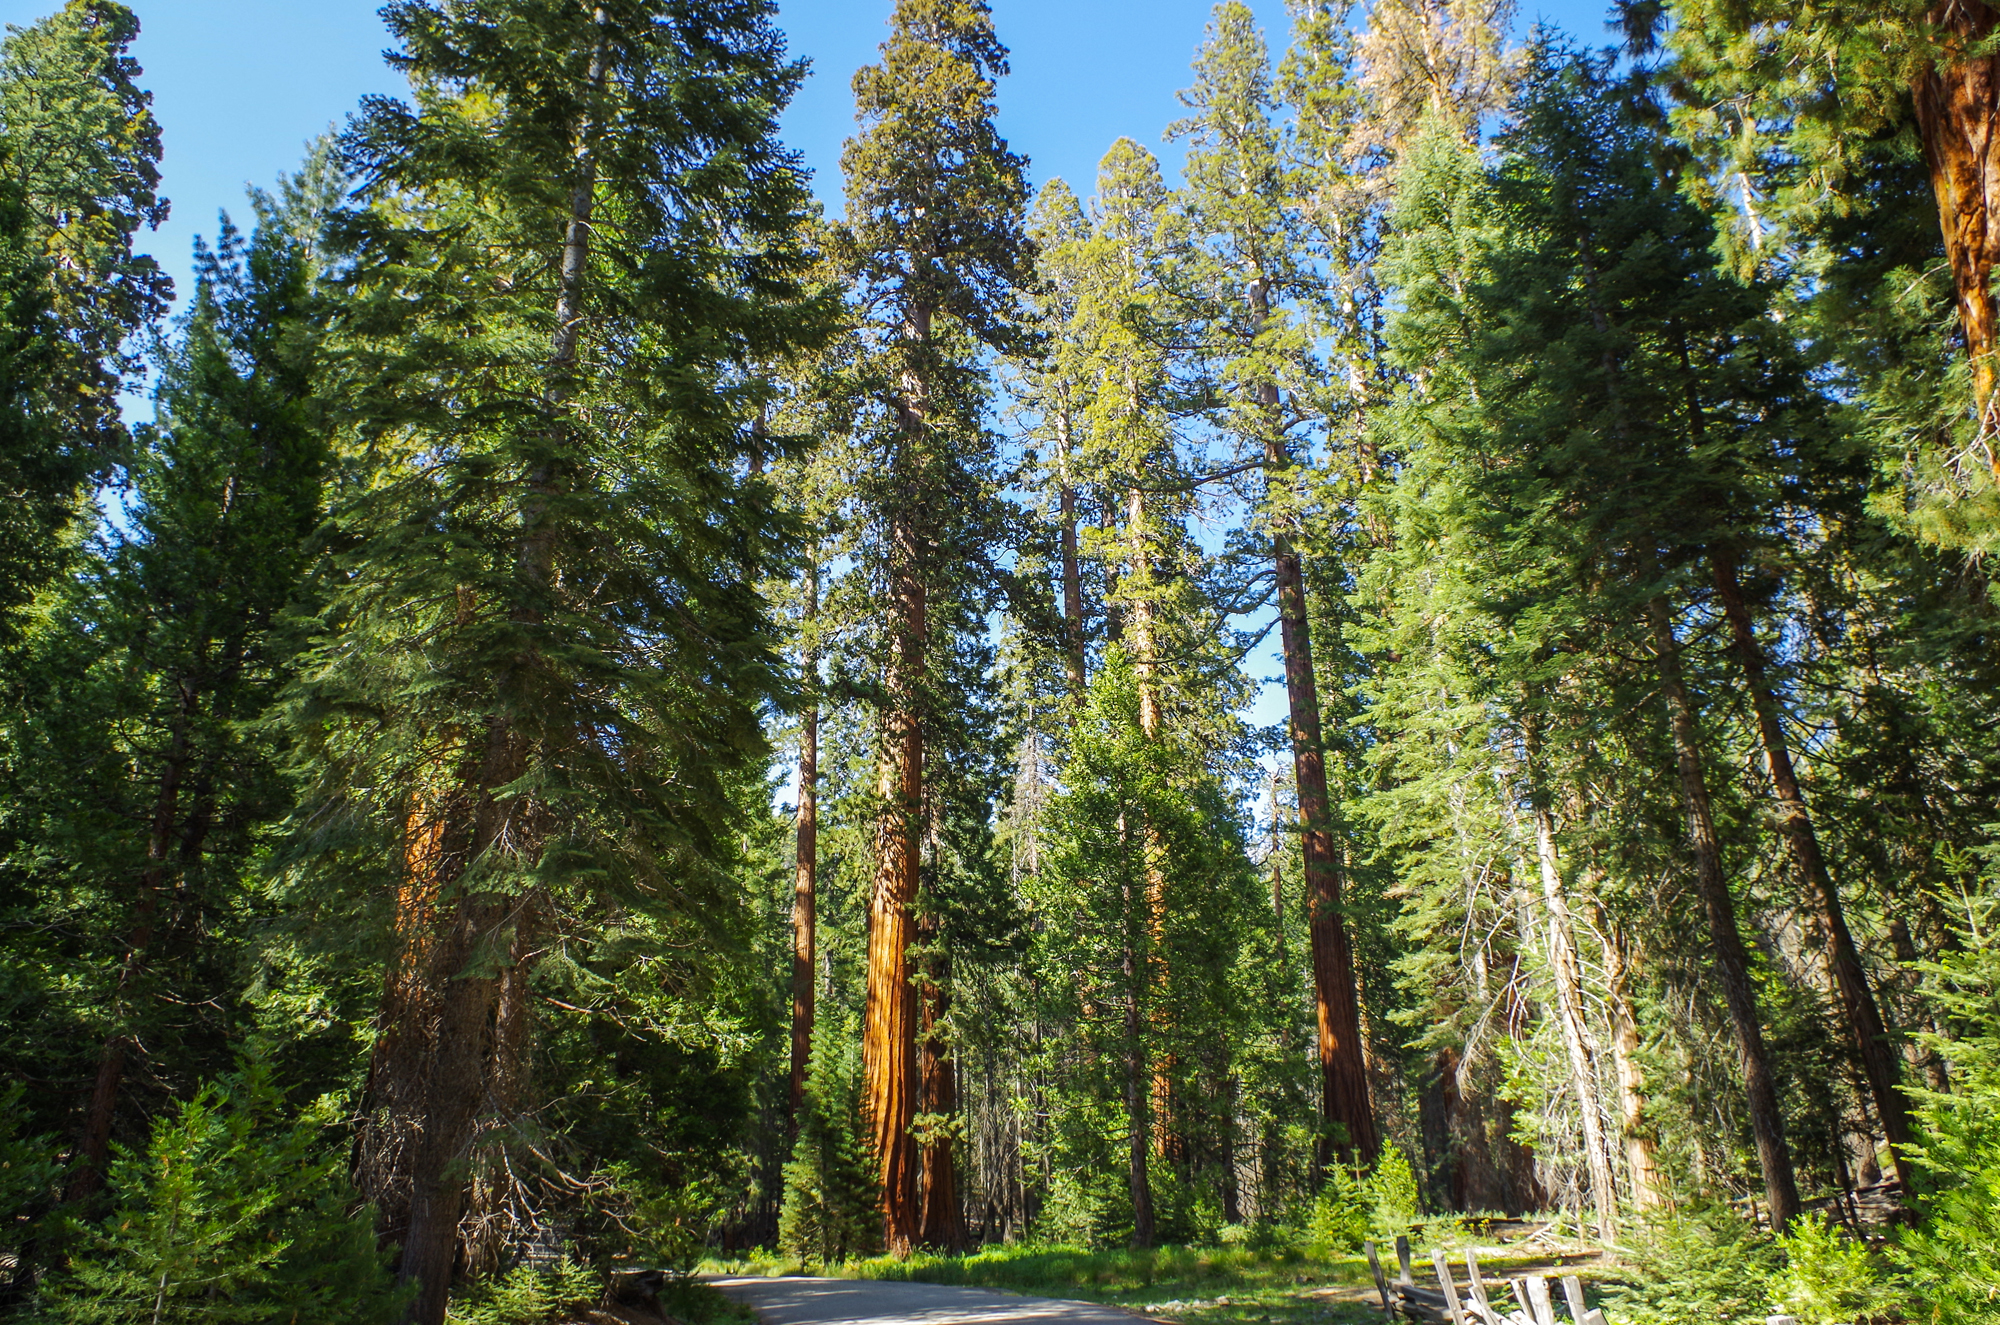 Viaje a medida a Costa Oeste, itinerario de viaje por Estados Unidos y Canadá. Parque Nacional Yosemite, Secuoyas gigantes